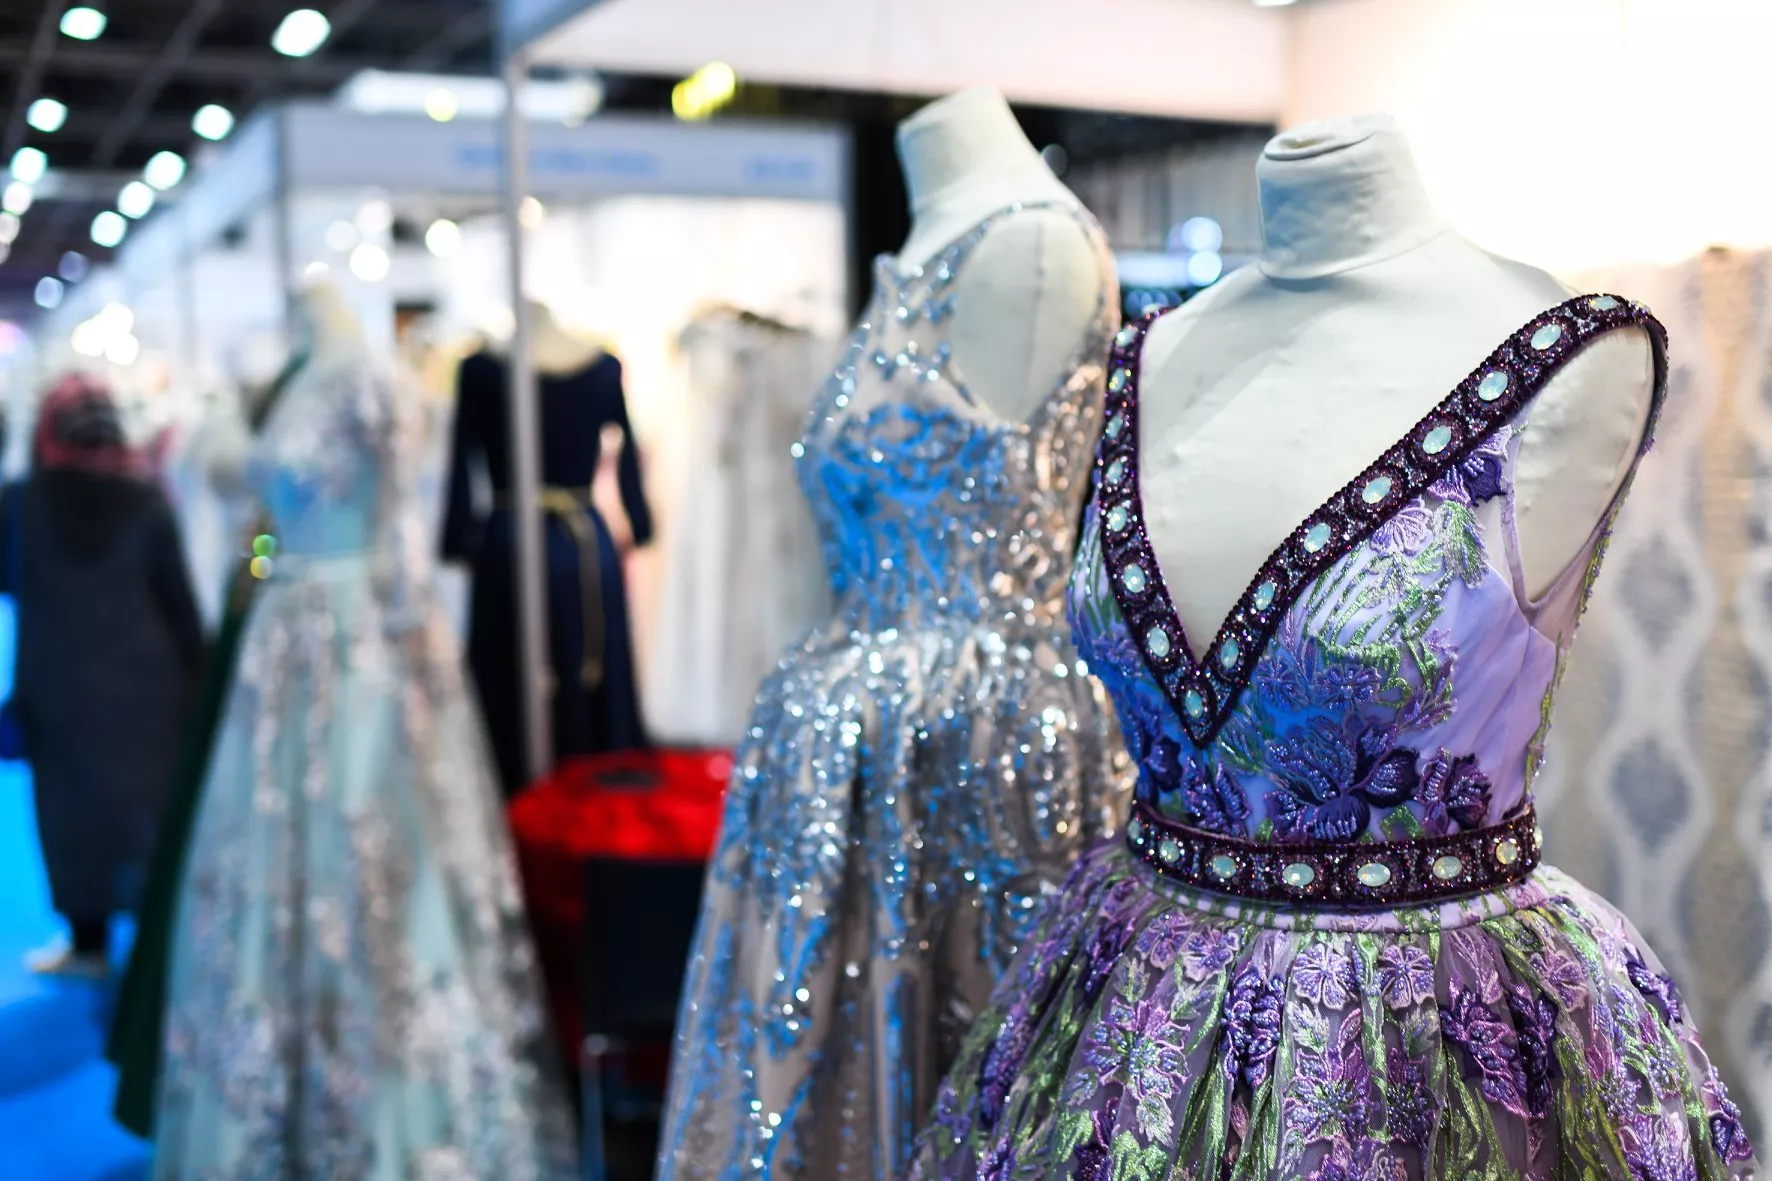 معرض العروس دبي 2018 يجمع آلاف العرائس المستقبليات بأهمّ الخبراء في قطاع الأعراس